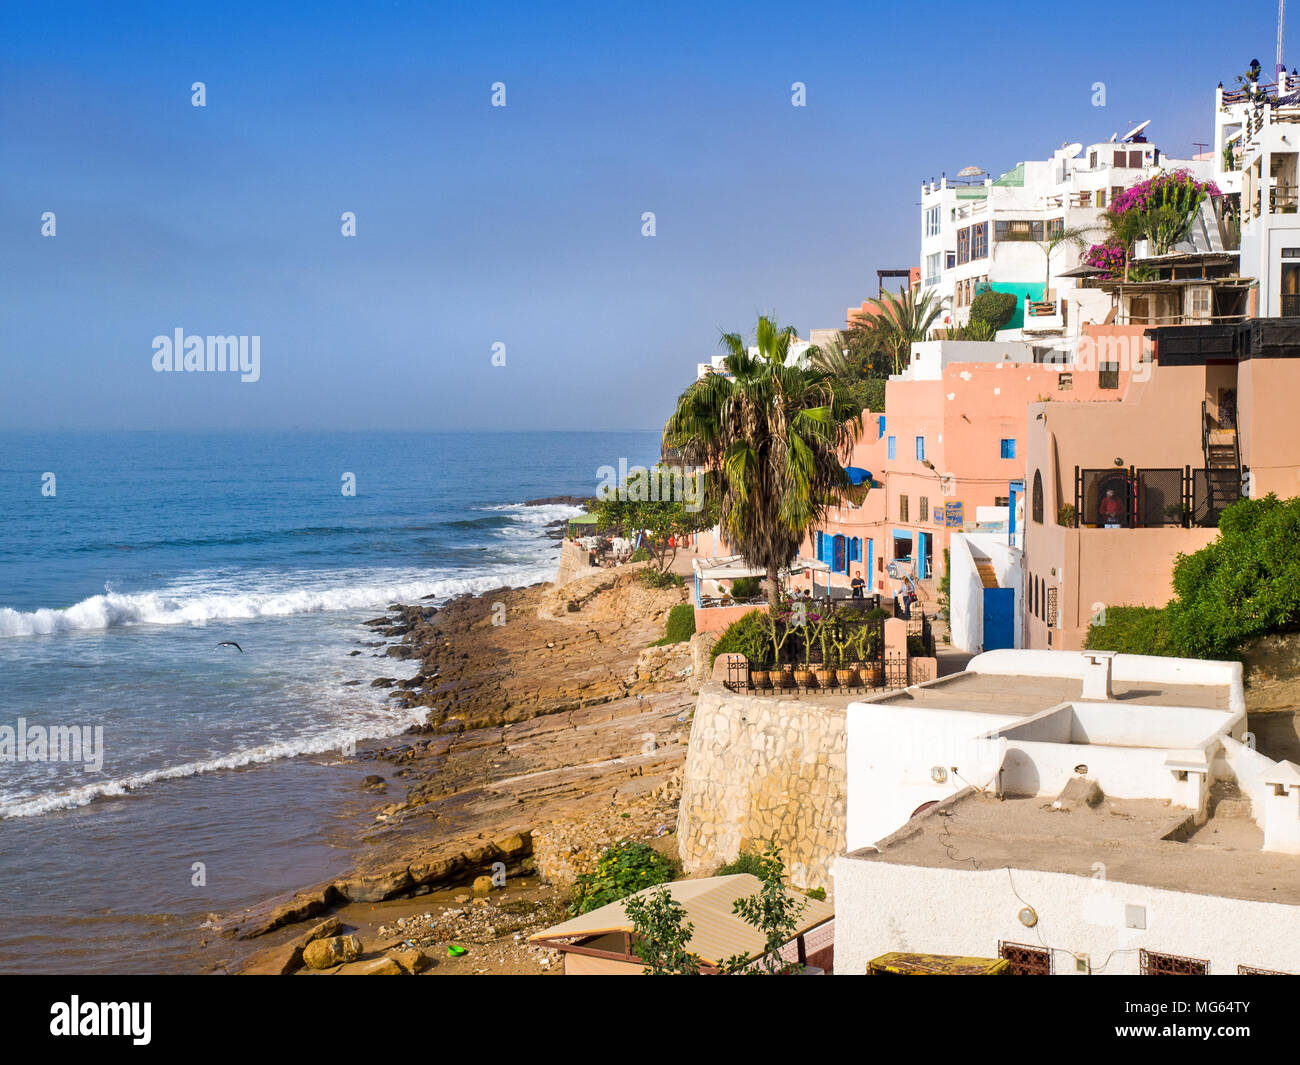 La ville côtière de Taghzoute / Taghzout, une populaire destination surf, Maroc Banque D'Images